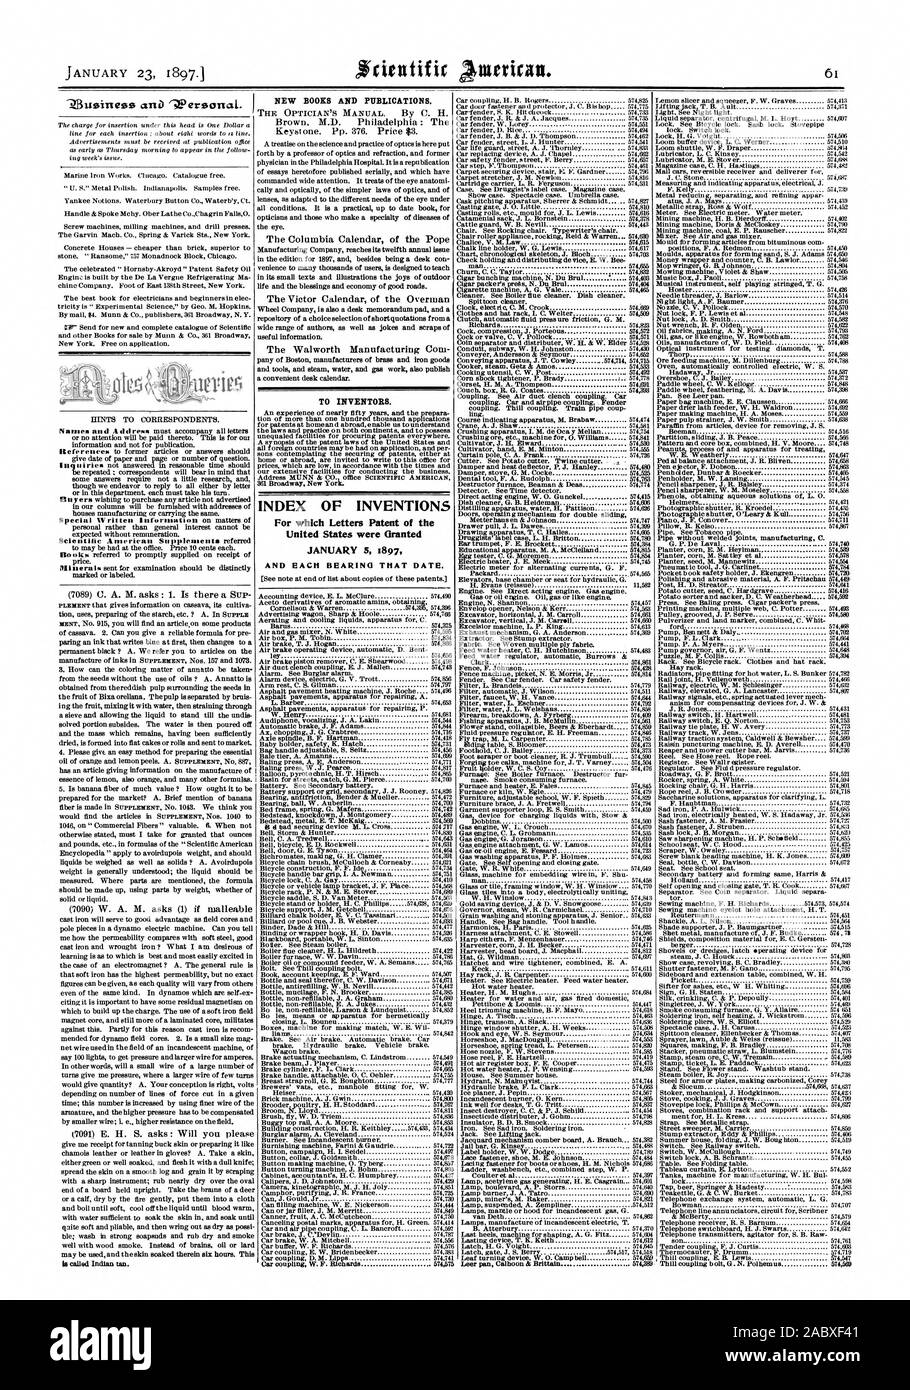 Indice delle invenzioni per le quali lettere di Brevetto degli Stati Uniti sono stati concessi 5 gennaio 1897 e ogni cuscinetto che data., Scientific American, 1897-01-23 Foto Stock